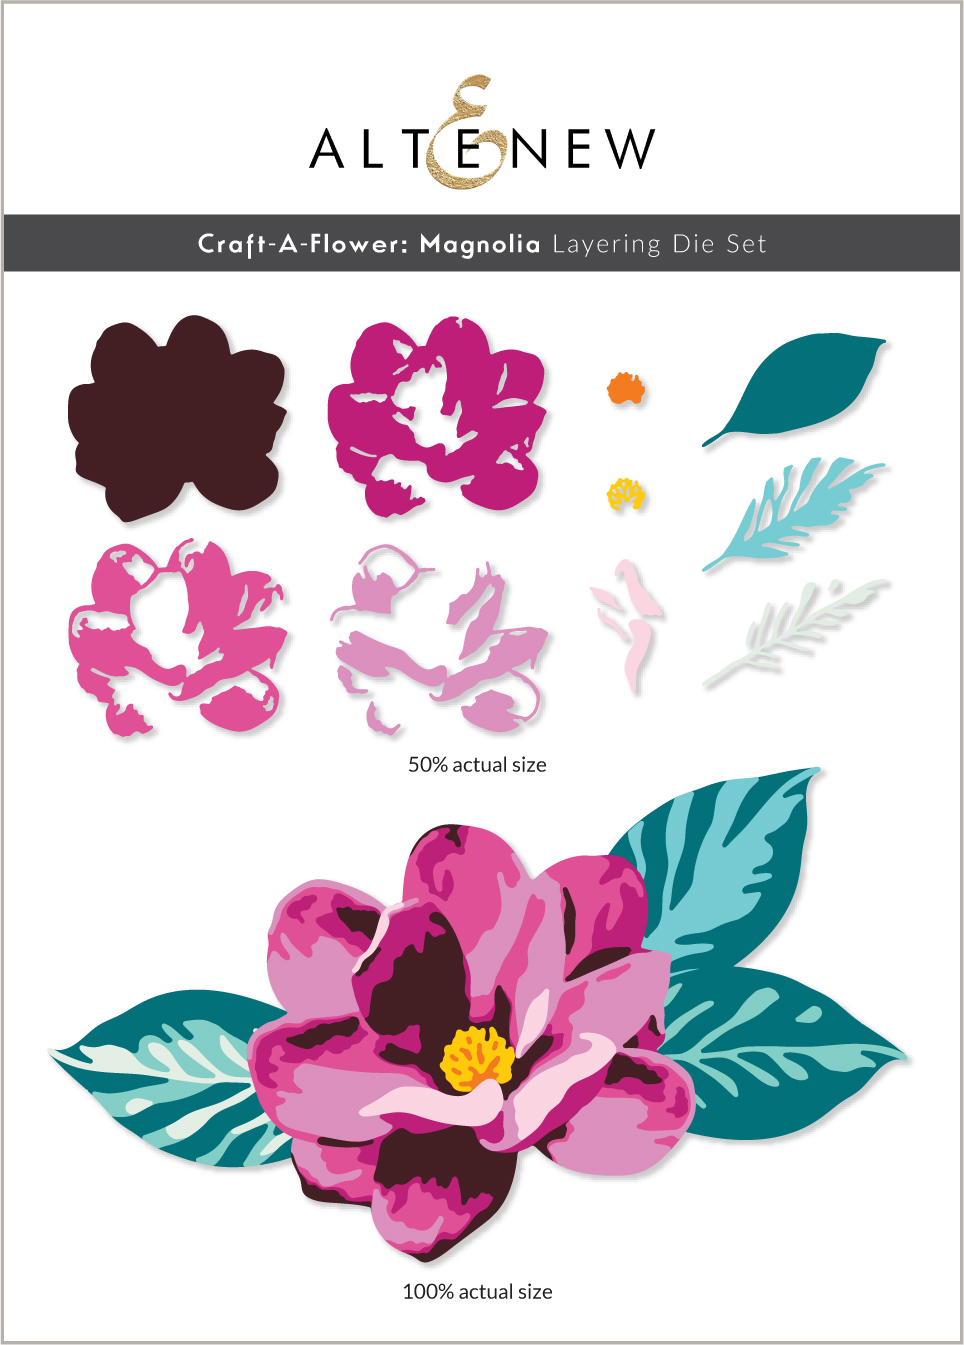 Altenew Craft-a-Flower : Magnolia Layering Die Set